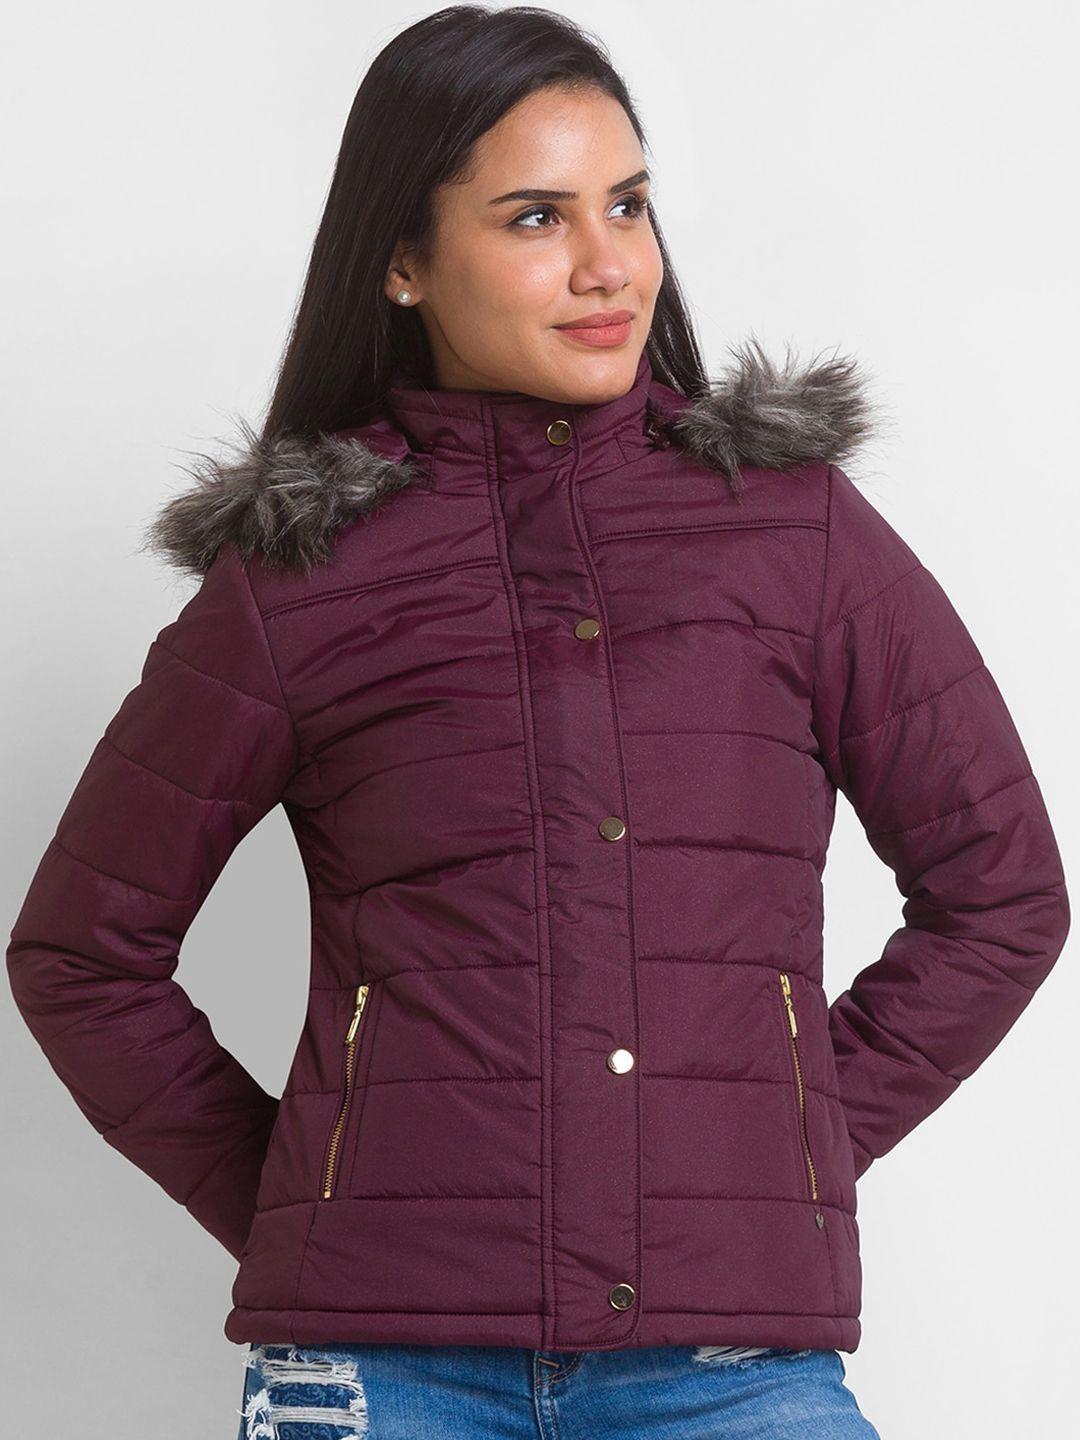 spykar-women-burgundy-parka-jacket